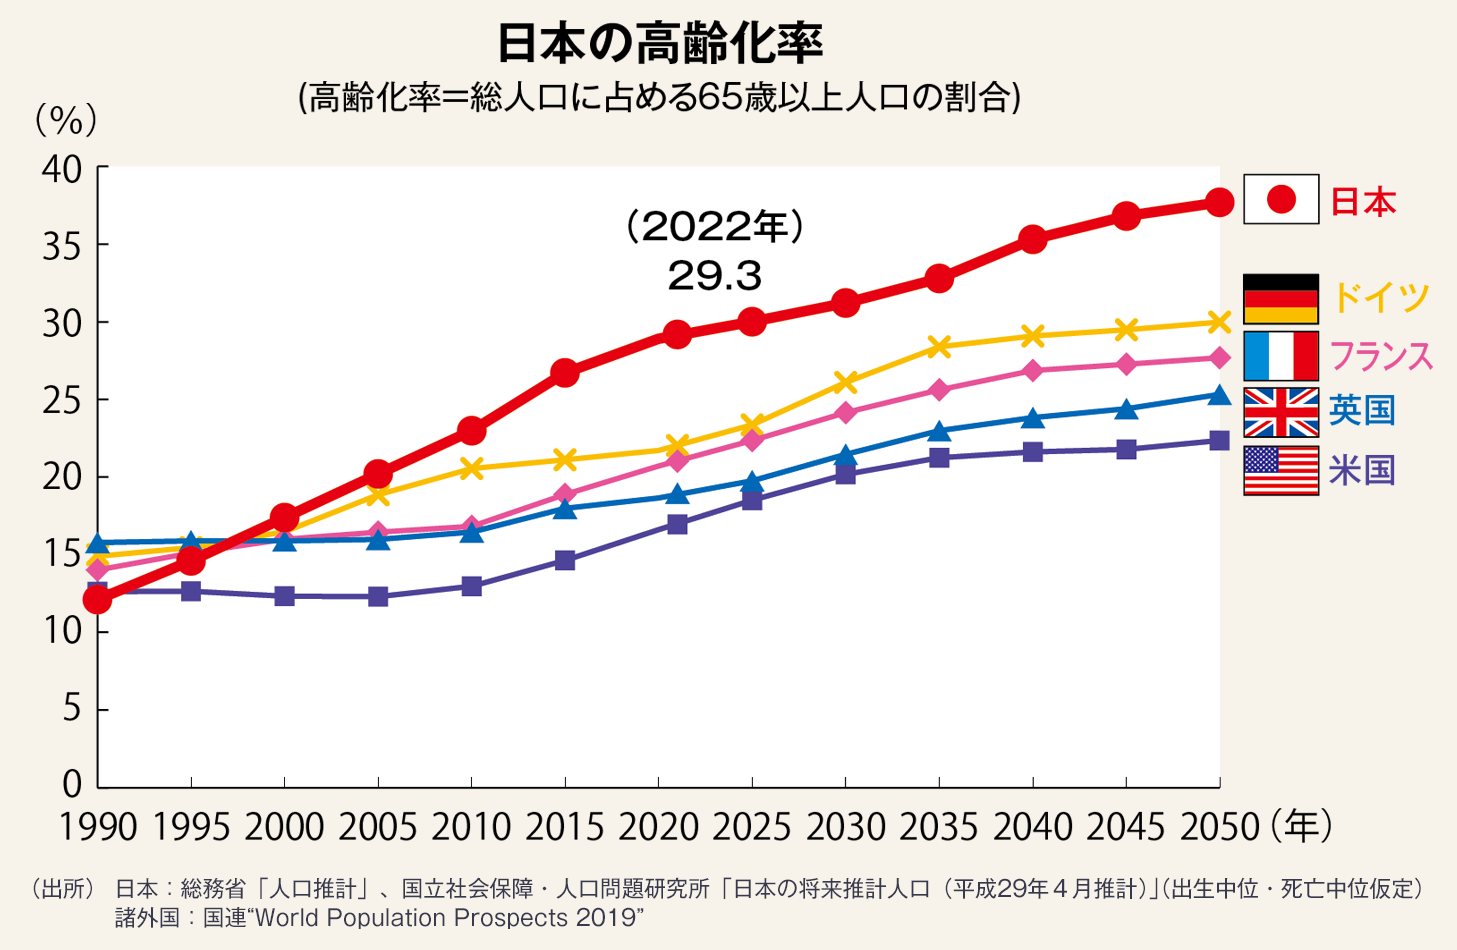 図・日本の高齢化率を示すグラフ。ドイツ、フランス、イギリス、アメリカに比べて日本の高齢化は著しく進んでいる。